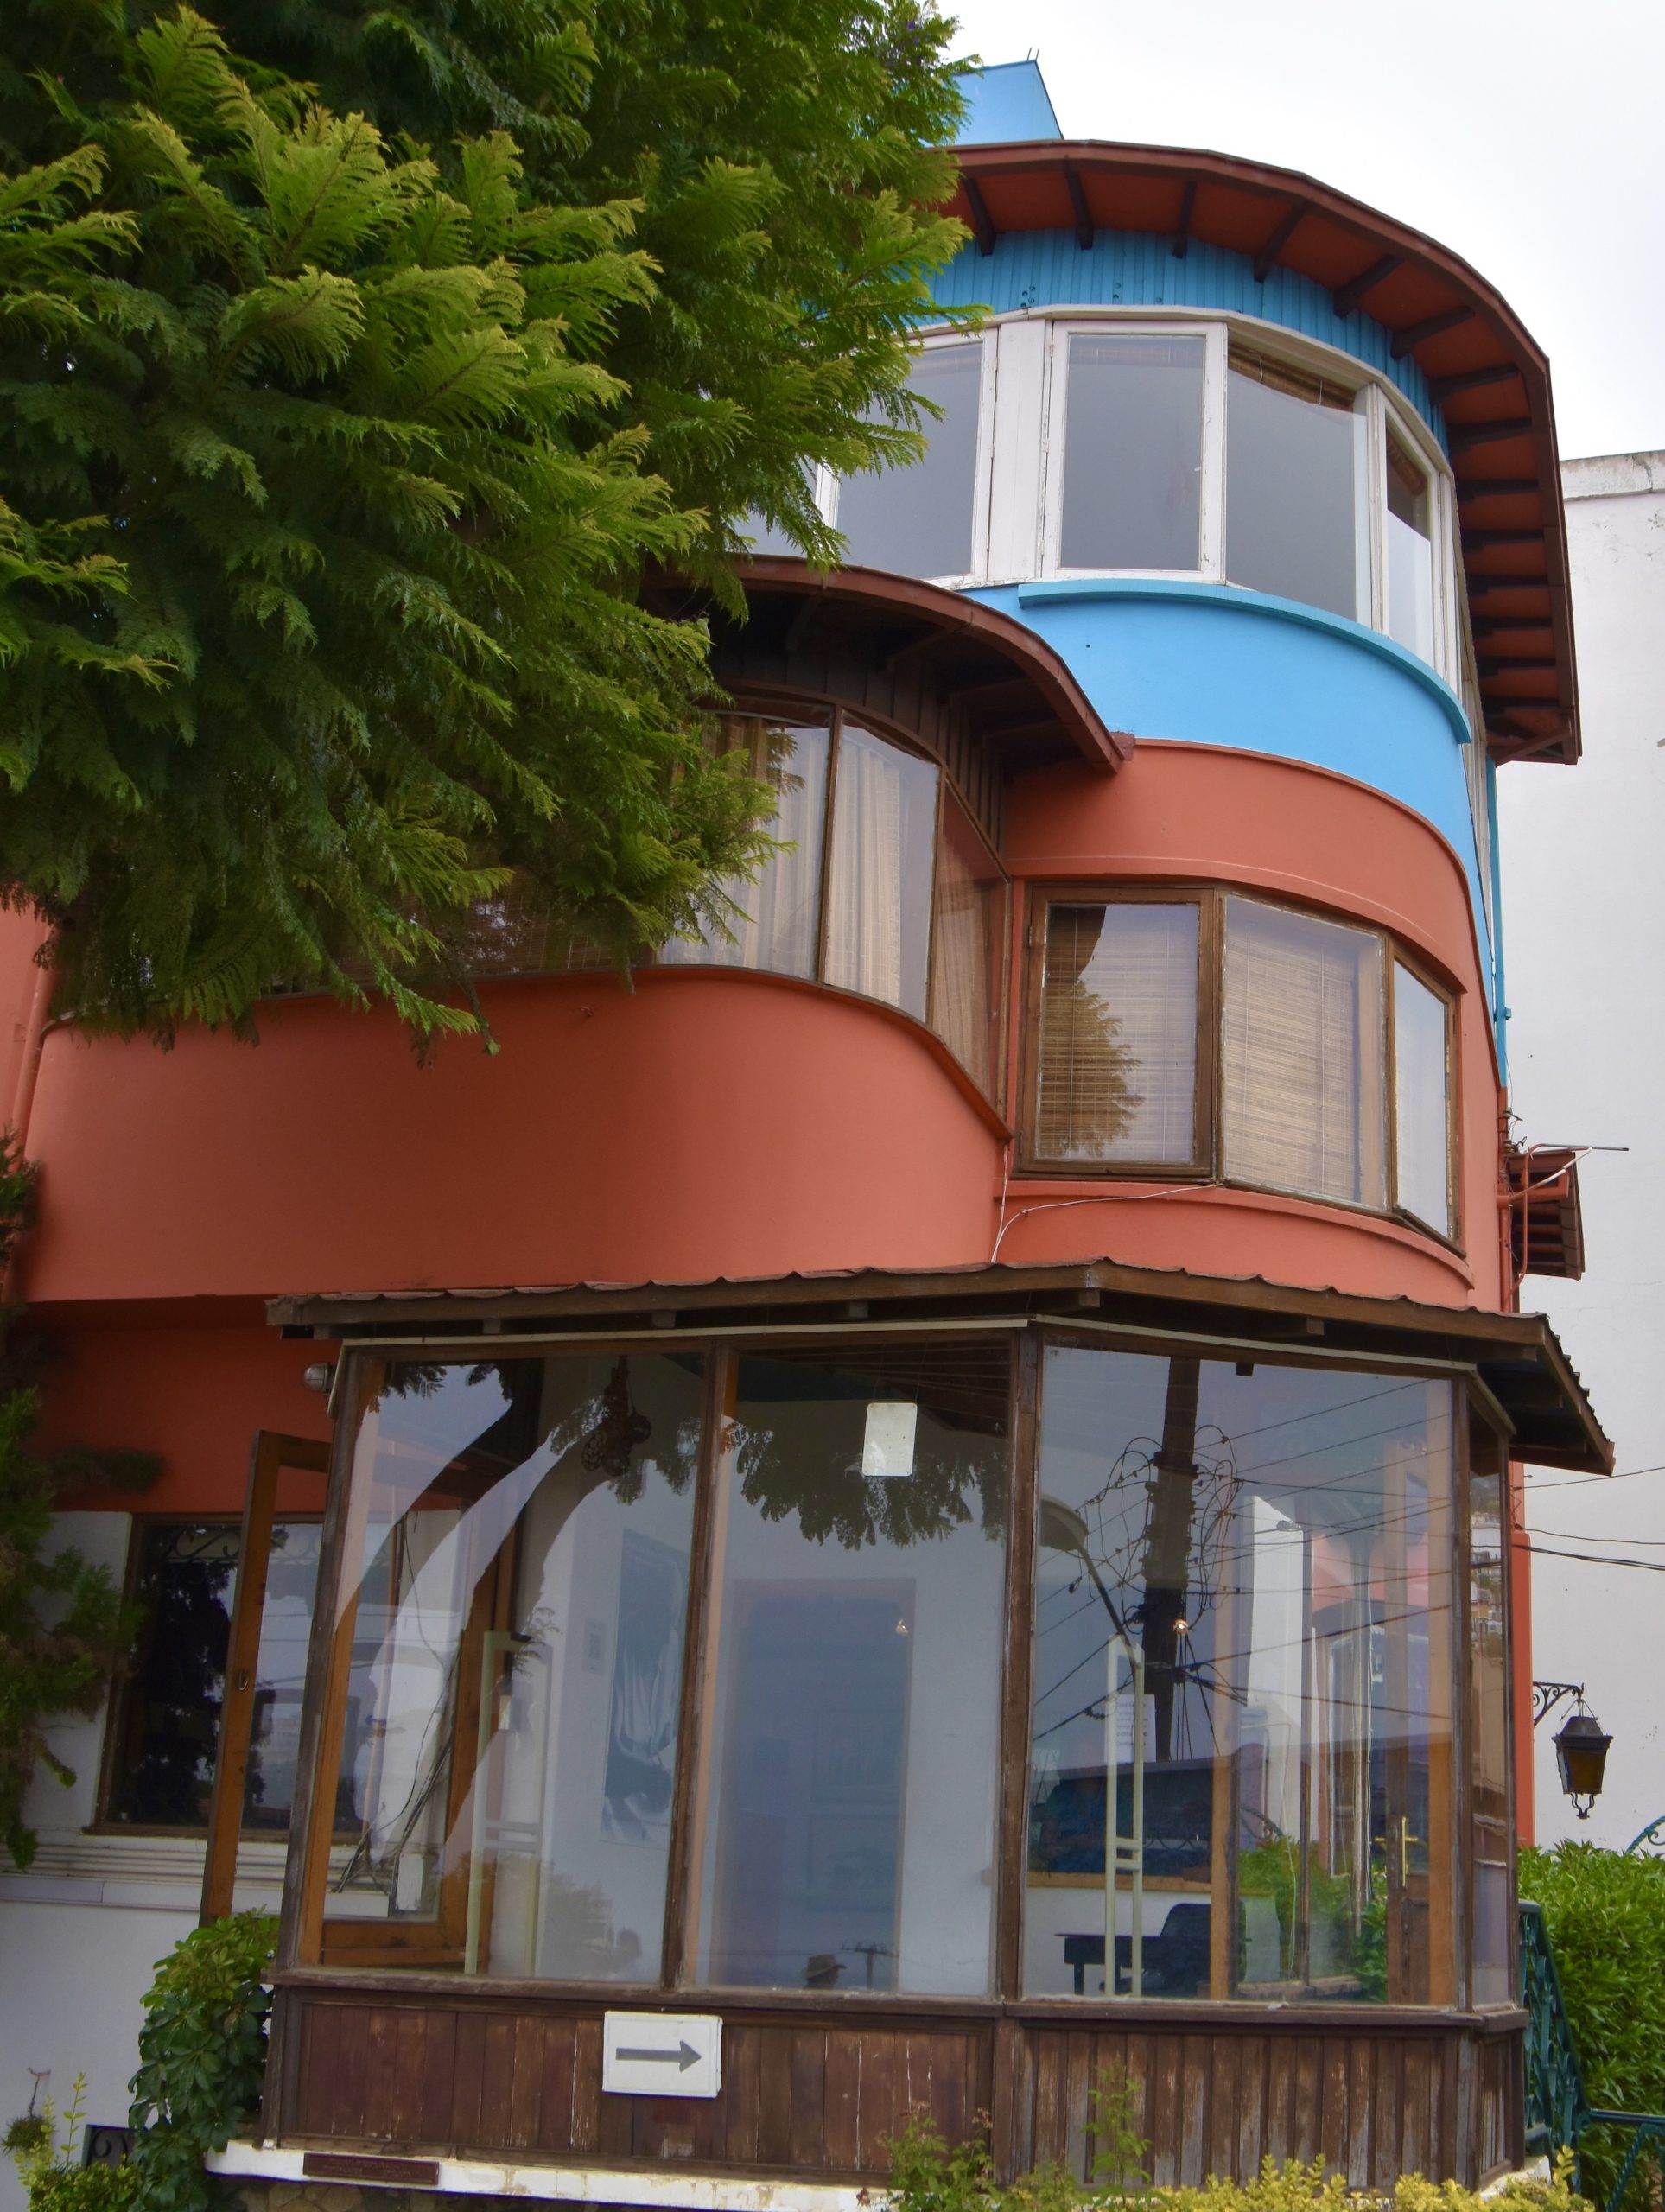 Pablo Neruda House, Valparaiso